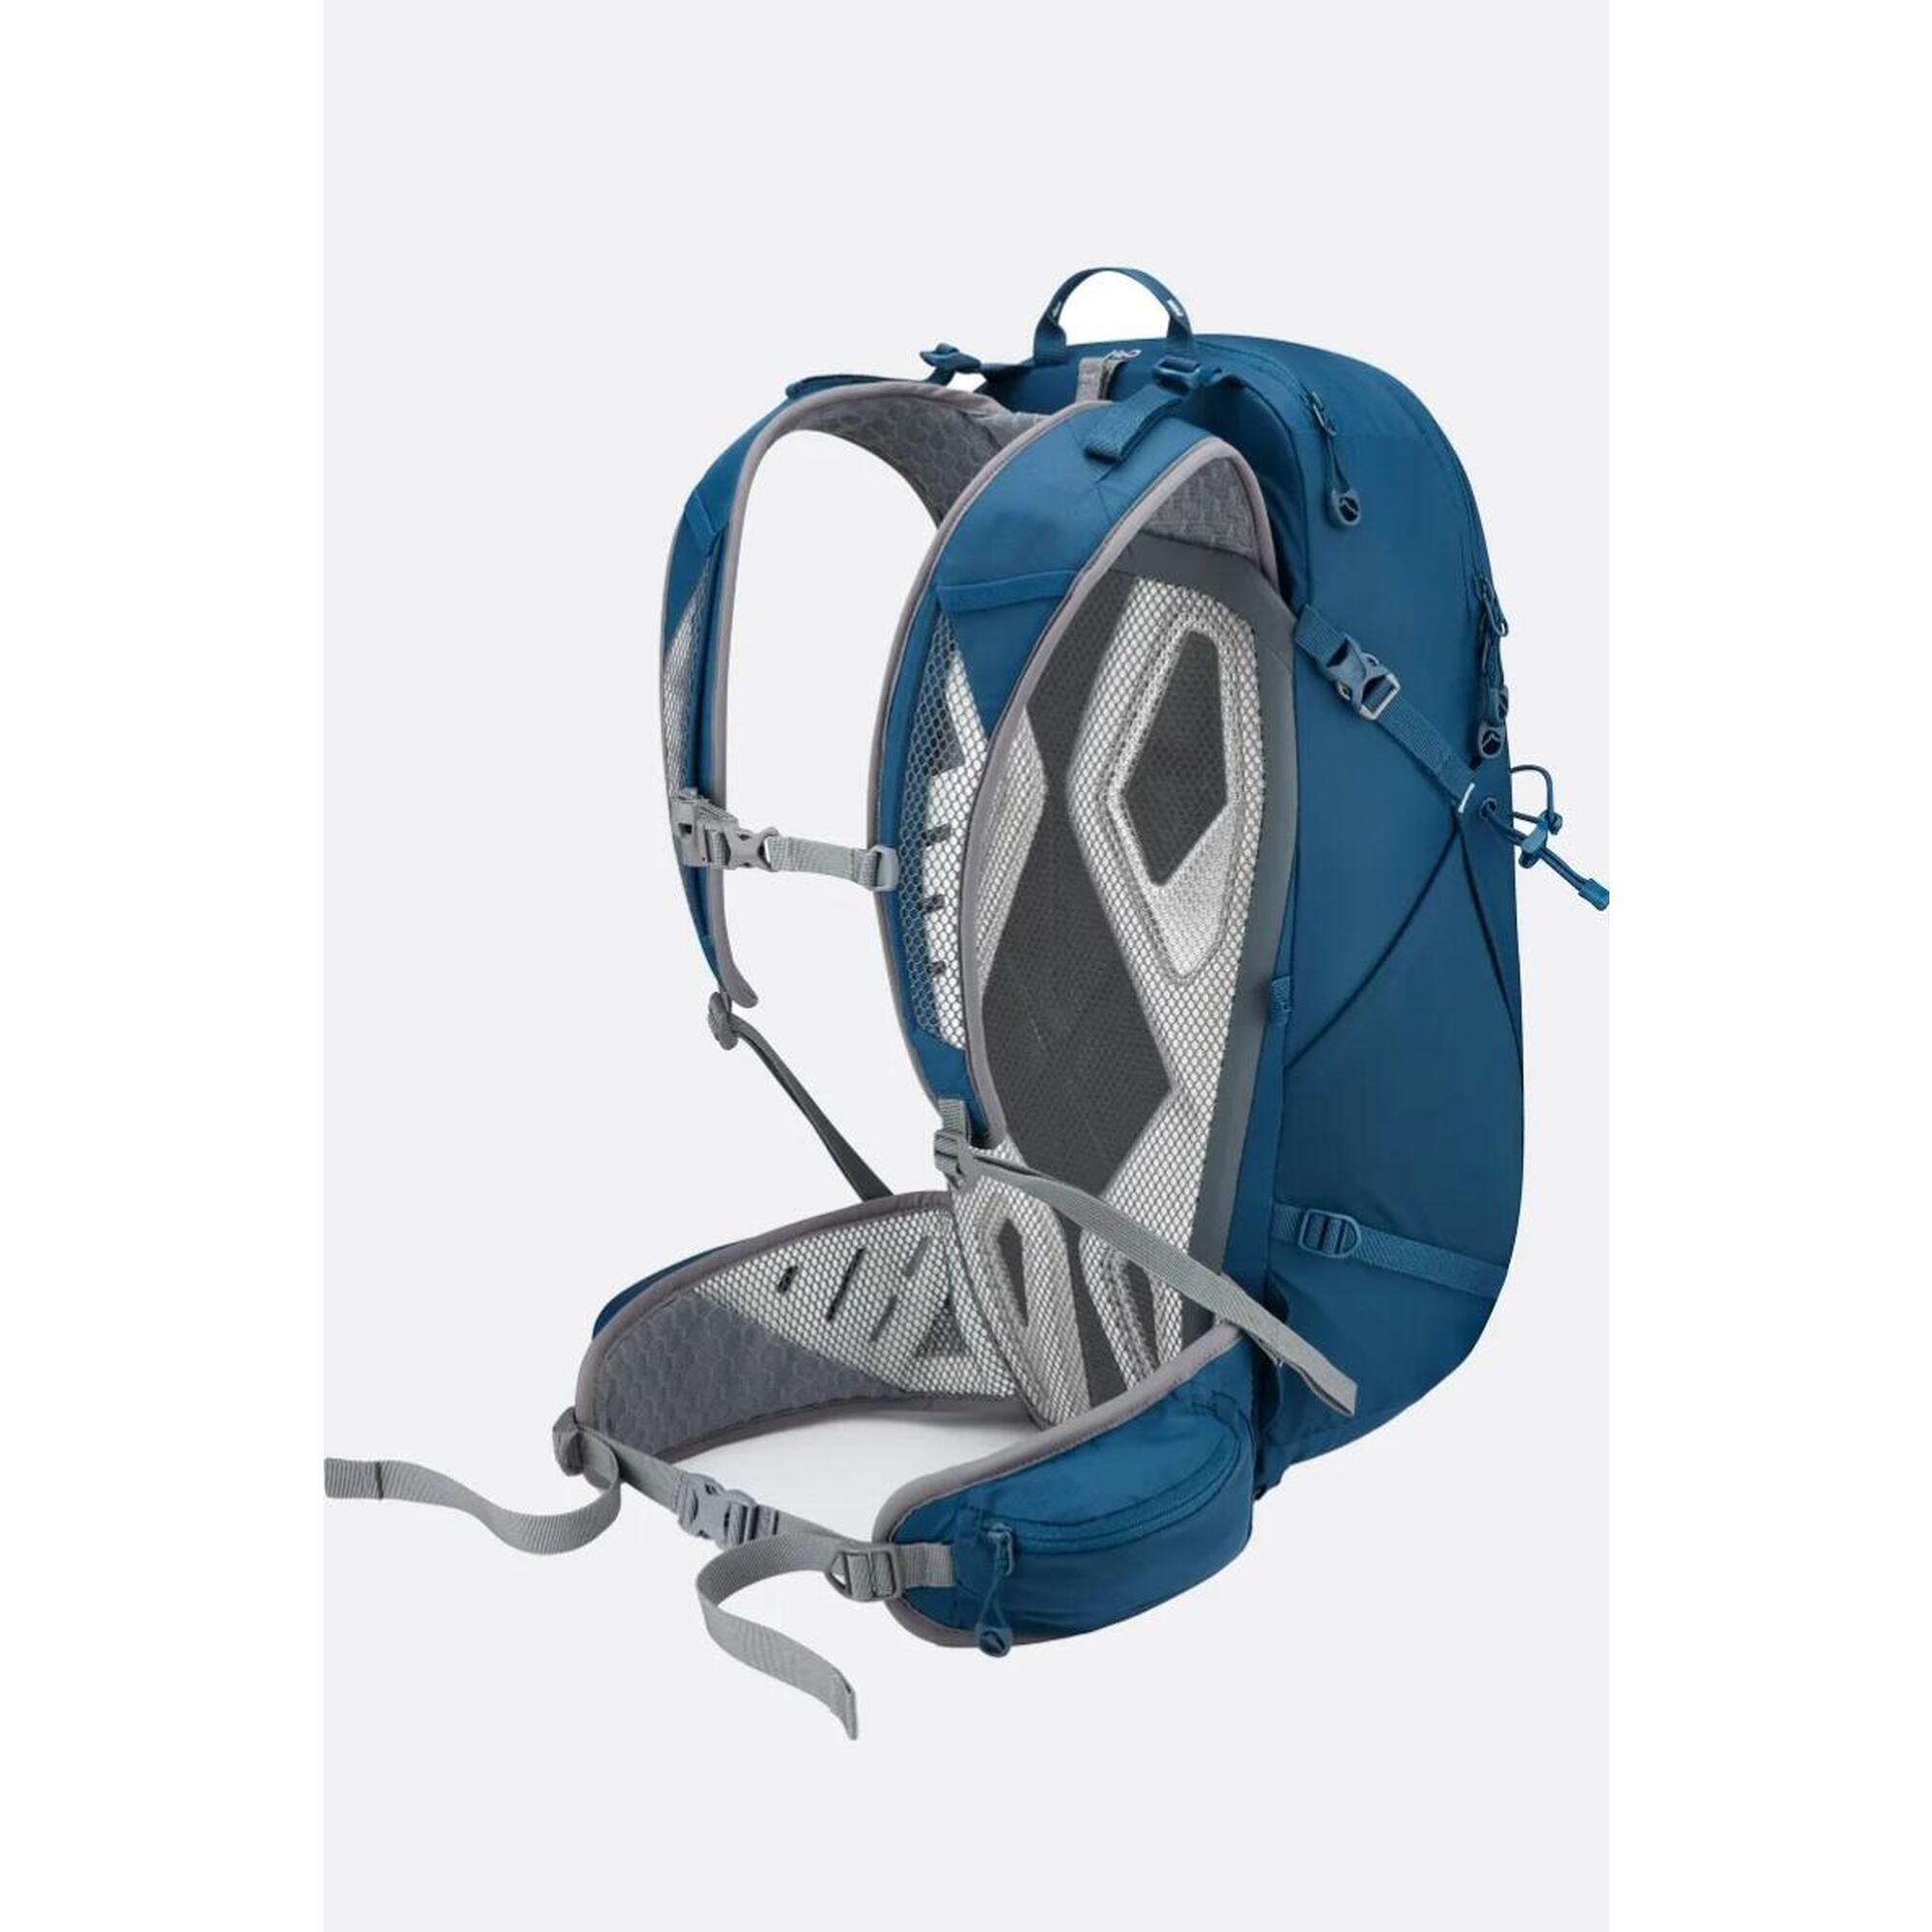 Aeon Hiking Backpack 27L - Blue